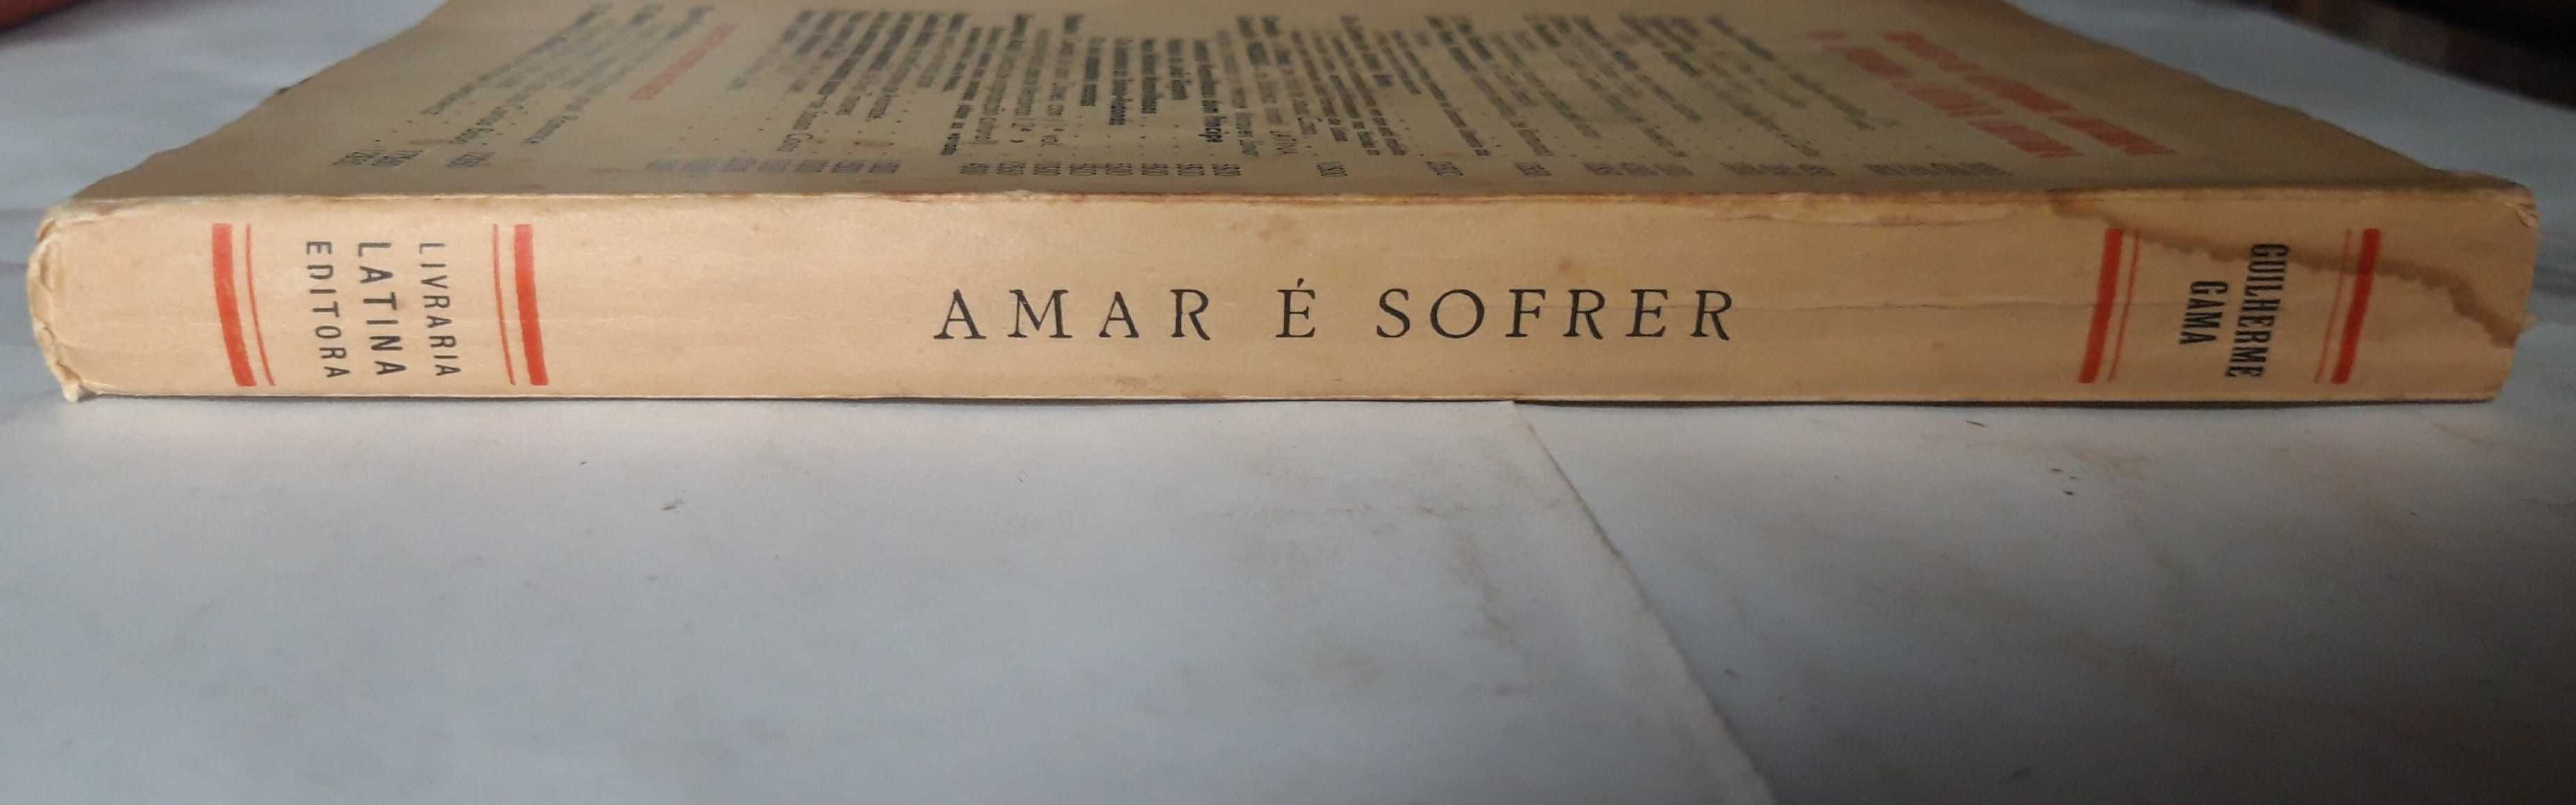 Livro - Guilherme Gama - Amar é Sofrer